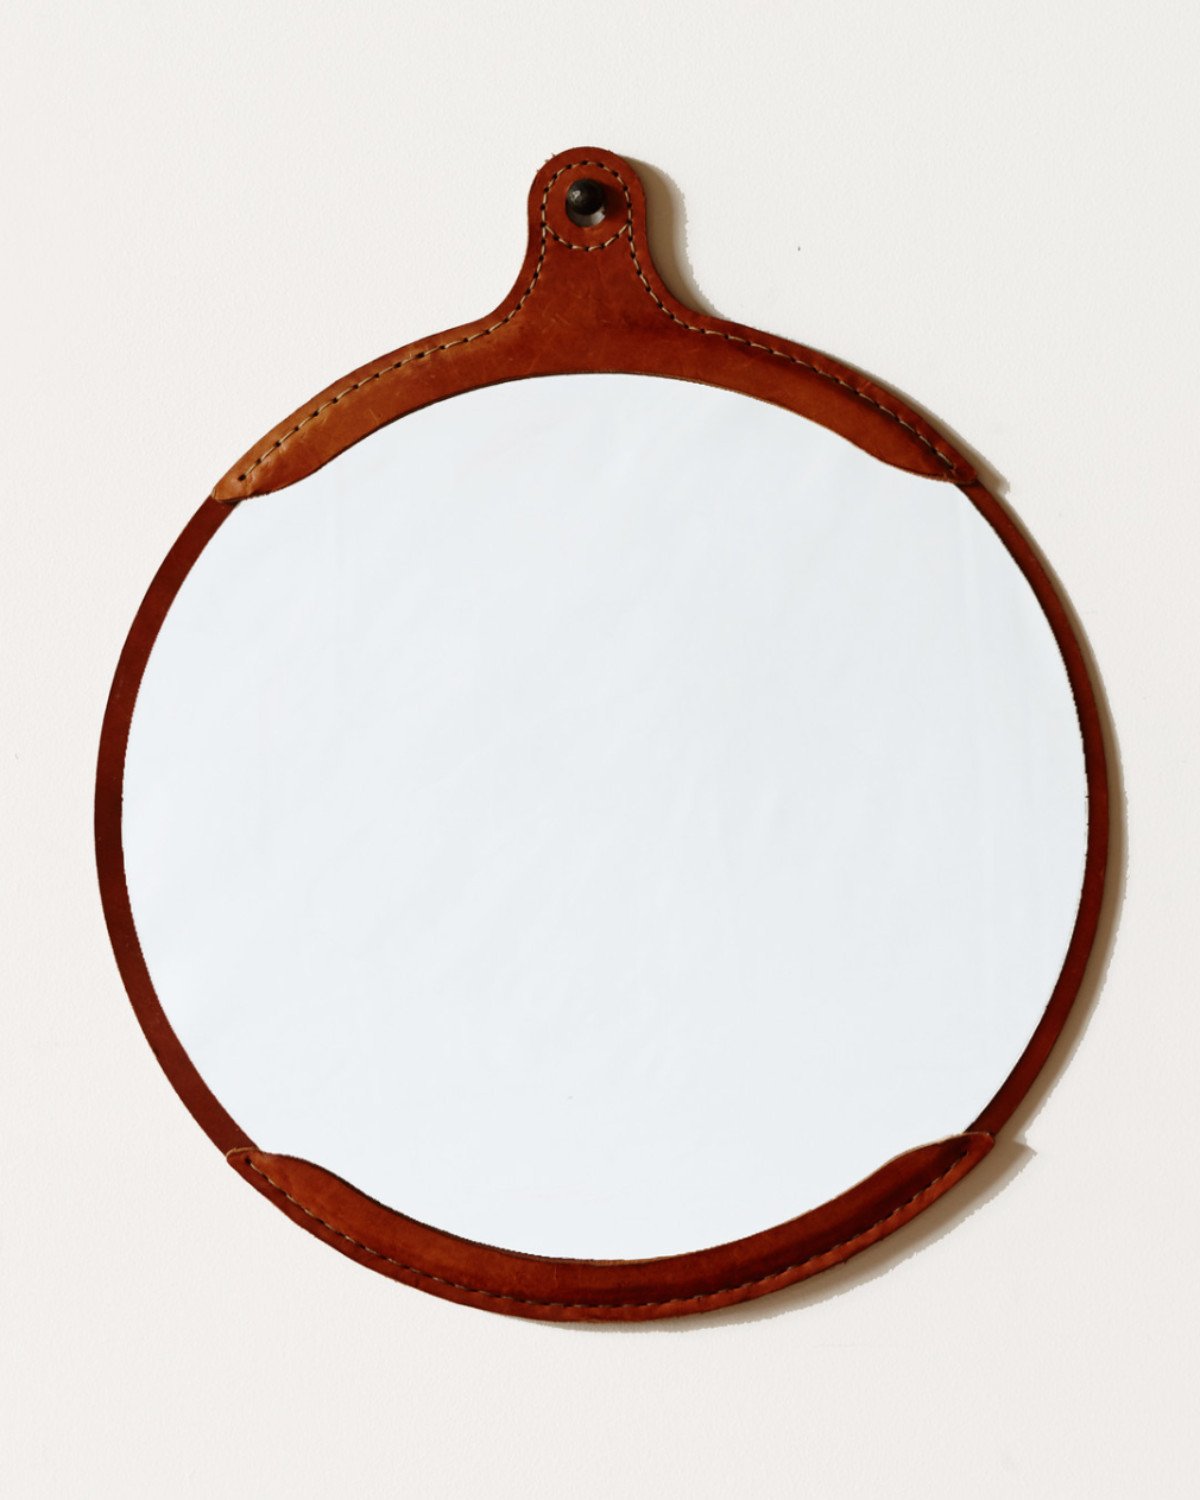 Lostine Fairmount round leather mirror 